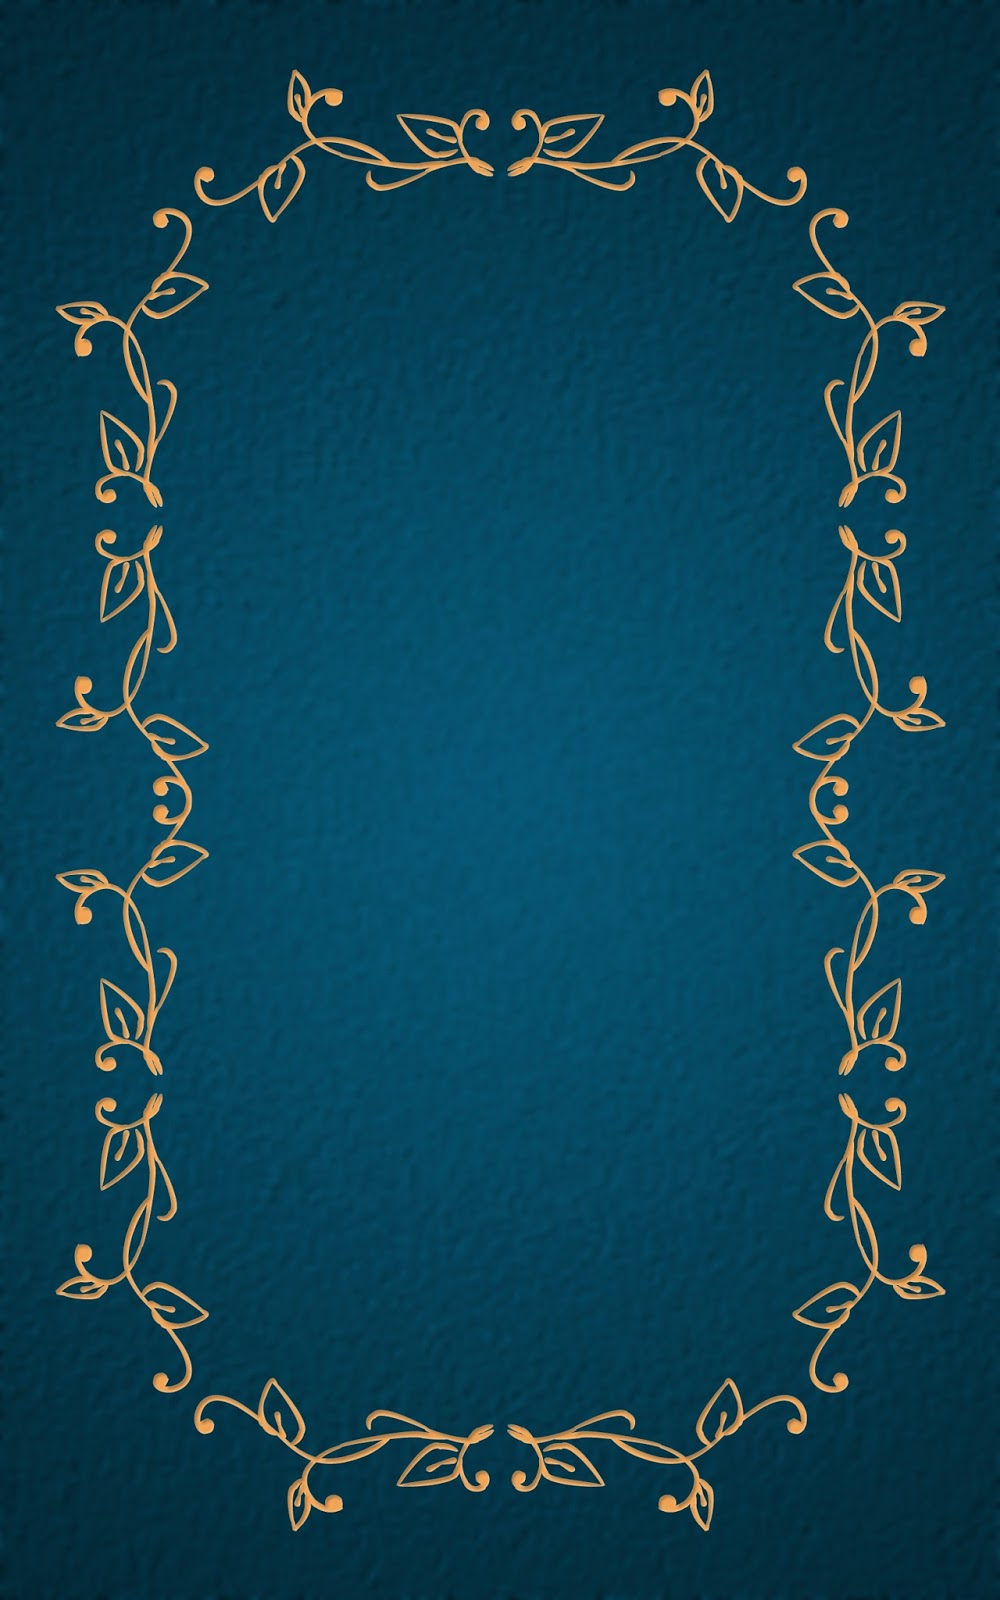 いーブックデザイン 電子書籍用表紙画像フリー素材 009 飾り罫 青